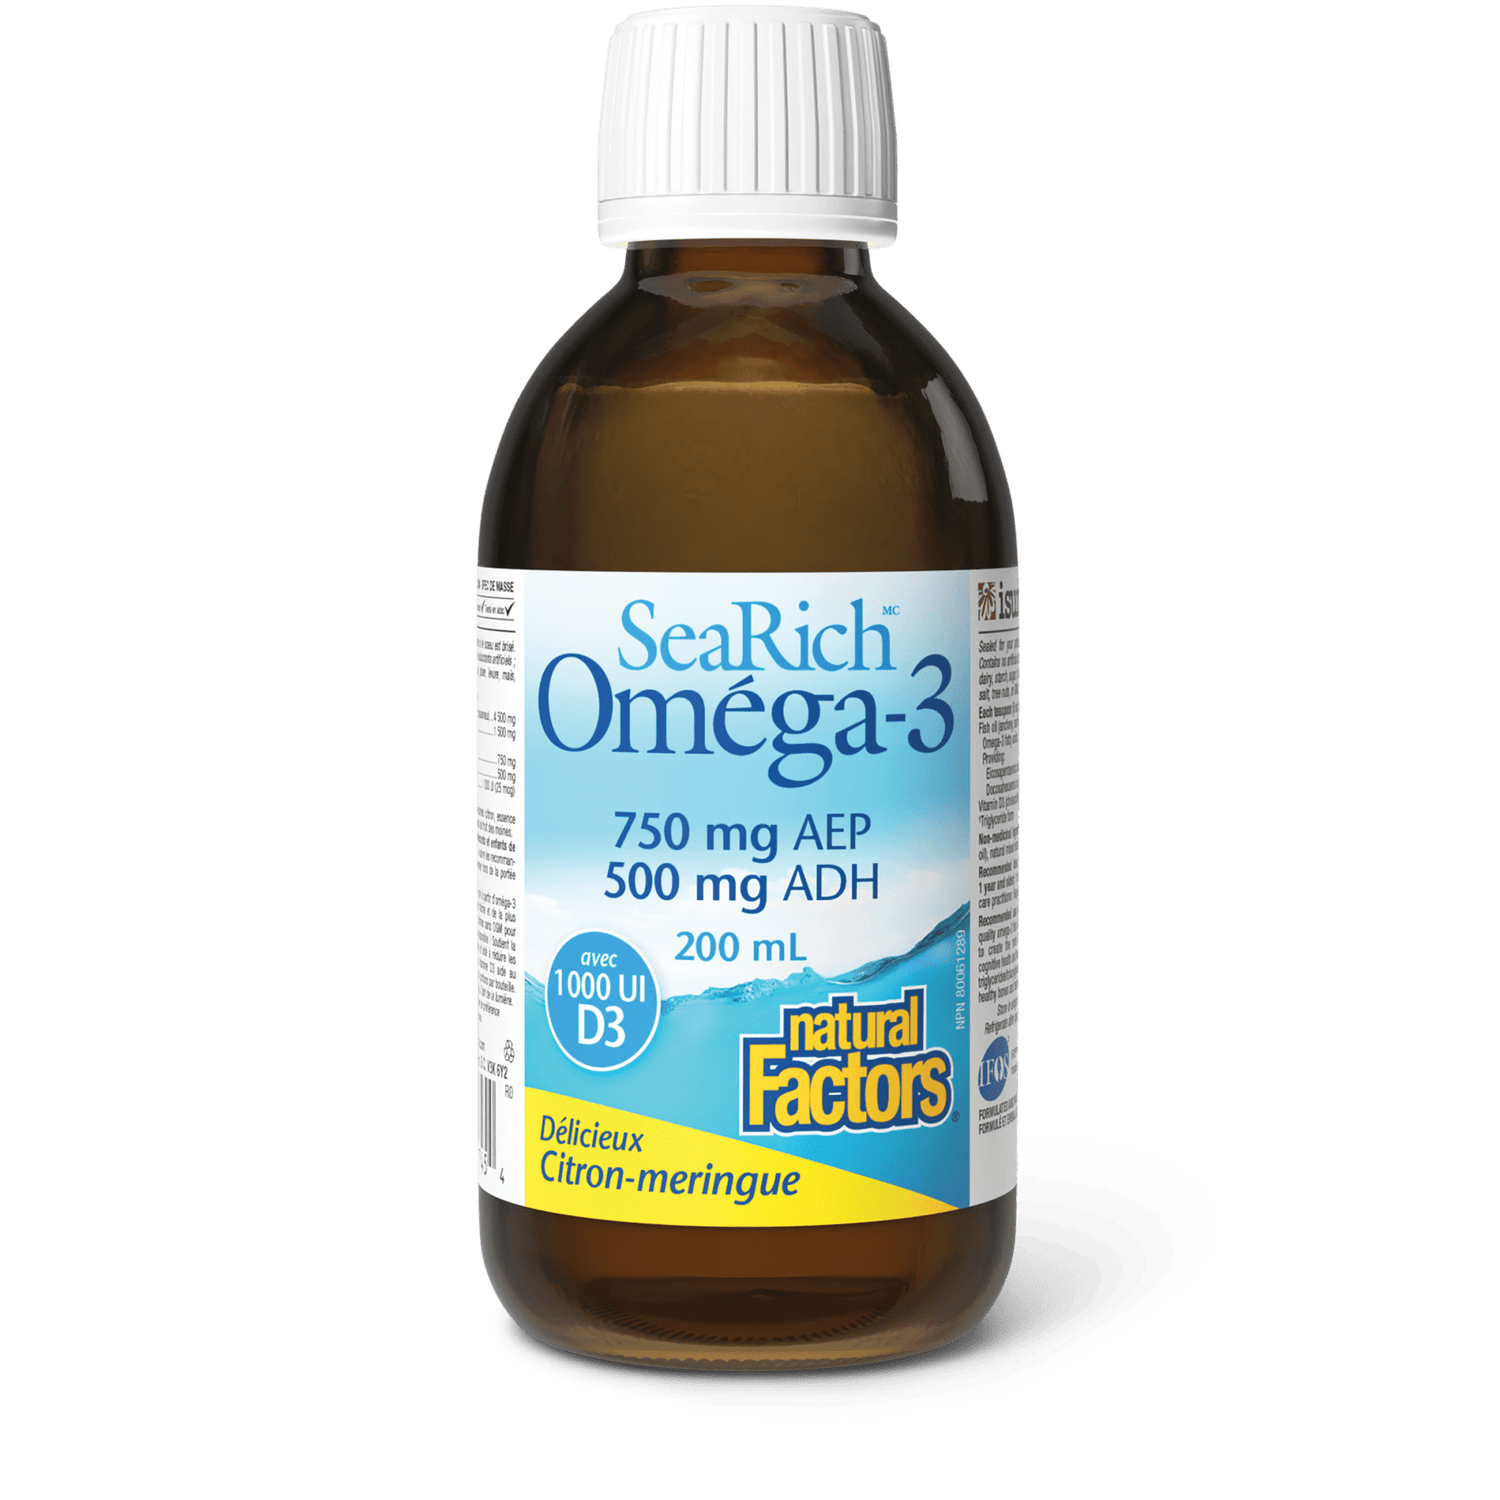 Oméga-3 avec D3 750 mg AEP/500 mg ADH, meringue au citron, SeaRich, Natural Factors|v|image|35745